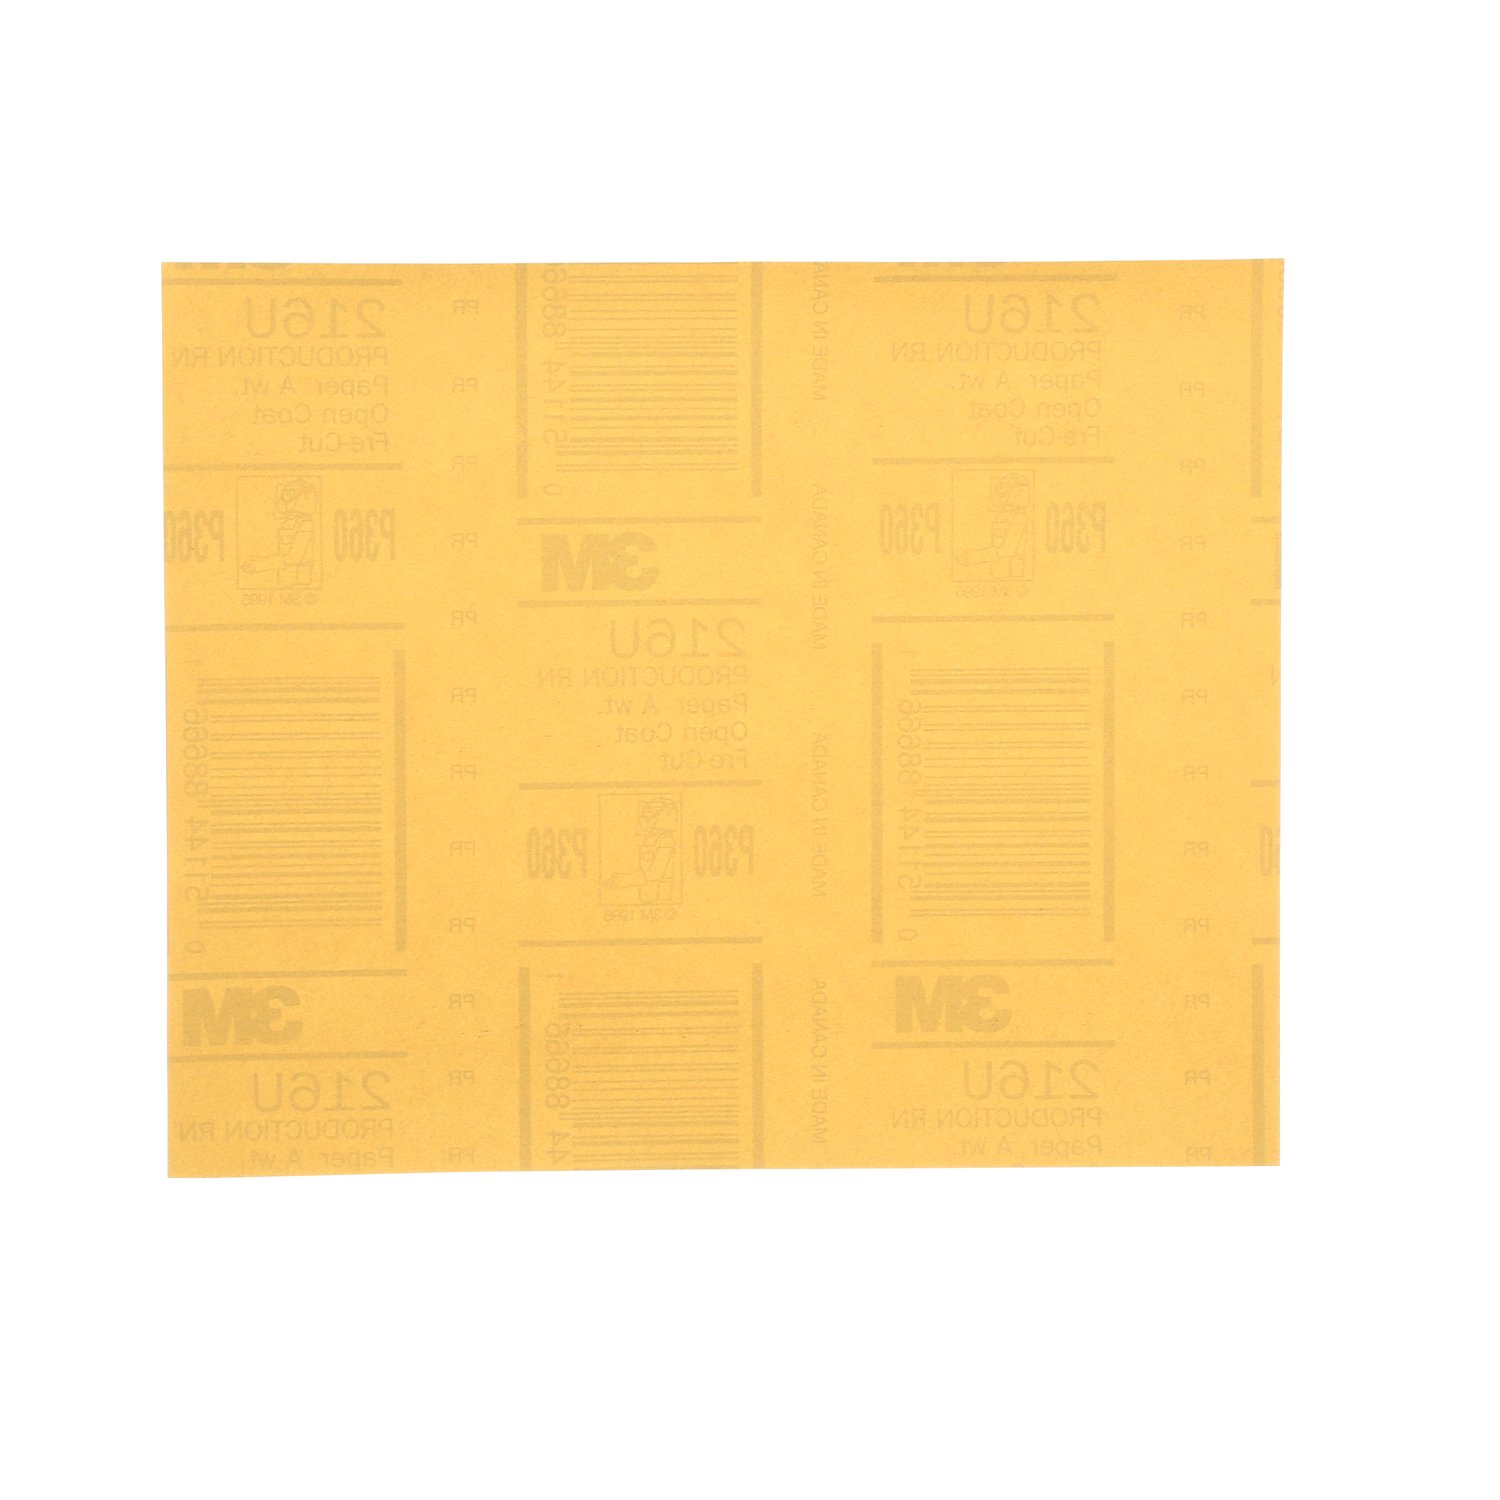 7100169722 - 3M Gold Sheet 216U, 35332, P320, A wt, 18 in x 18 in, 310 sheets per
case